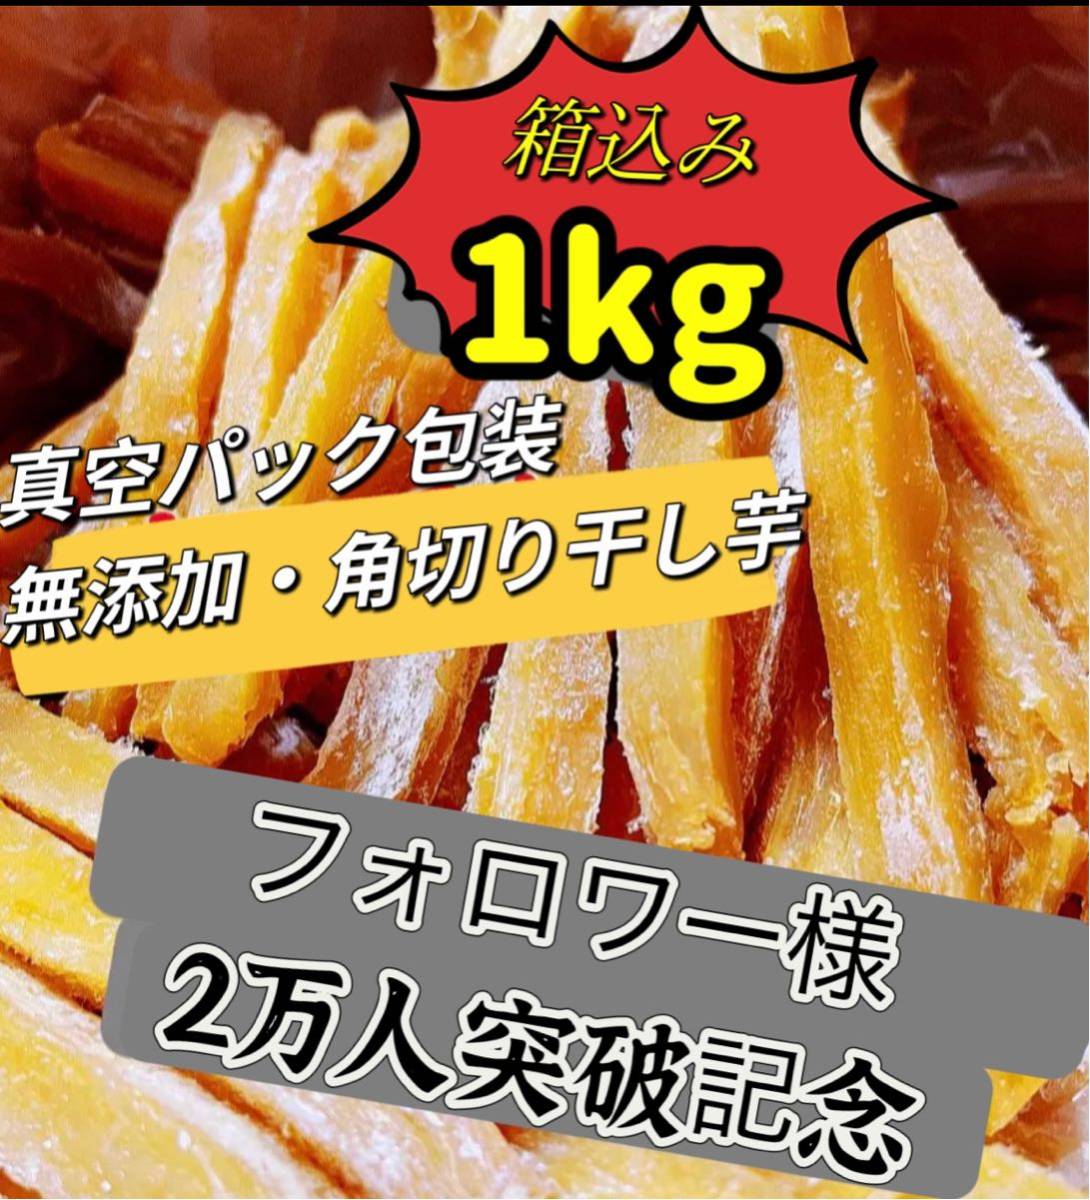  вакуум упаковка! очень популярный без добавок здоровое питание диетические продукты ho k ho k серия батат есть перевод угол порез . сушеный картофел коробка включая 1kg